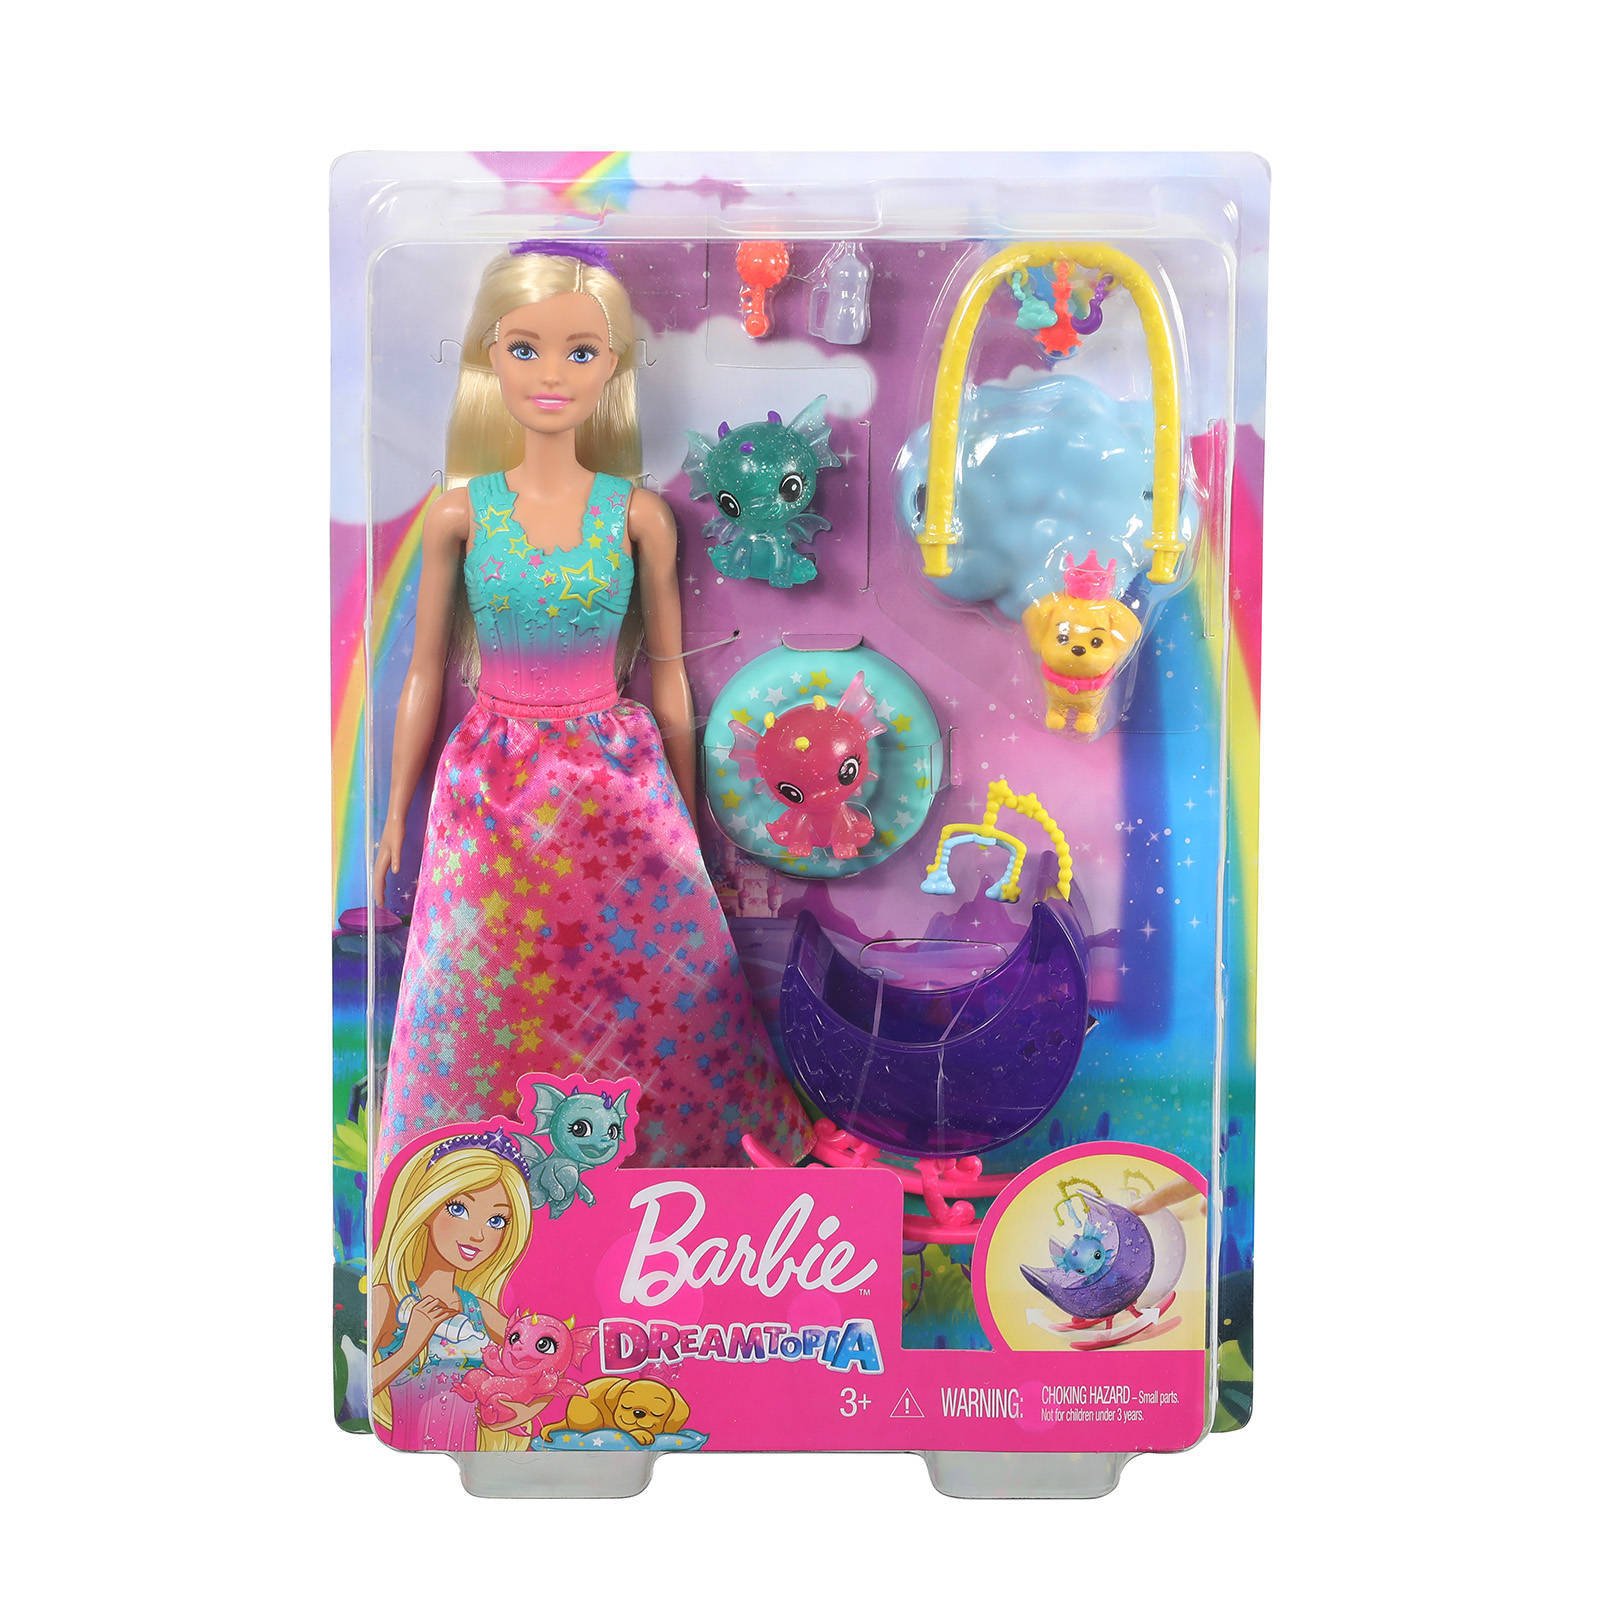 Barbie Fairytale Dreamtopia Speelset Fee Prinses met Honey & Baby Draakjes online kopen